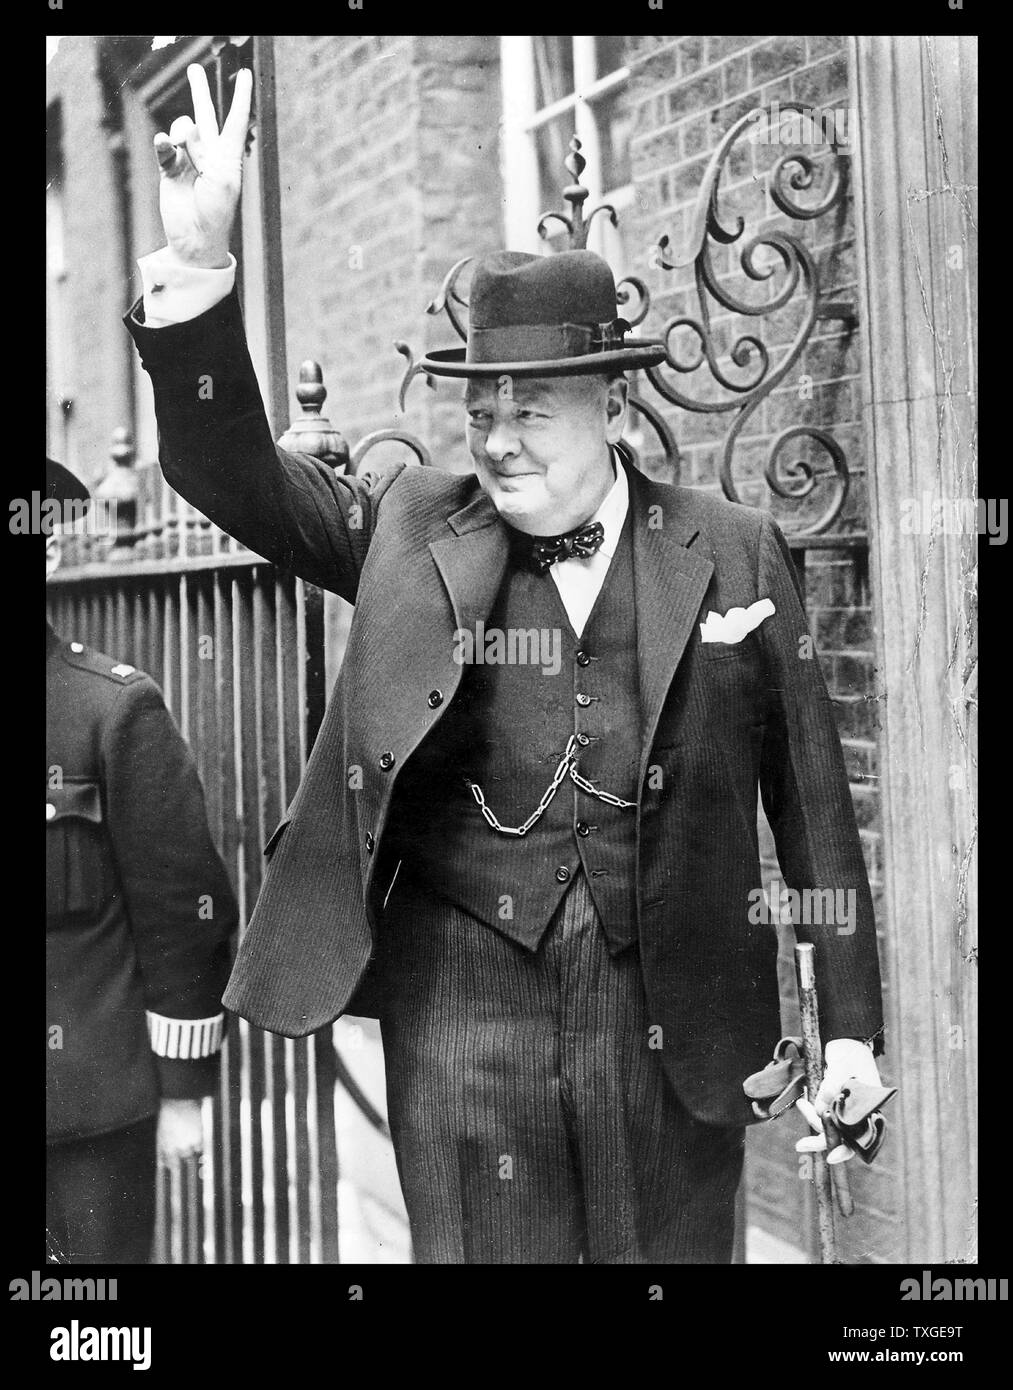 Photo de Winston Churchill (1874-1965) Homme politique britannique qui fut le premier ministre du Royaume-Uni. Datée 1943 Banque D'Images